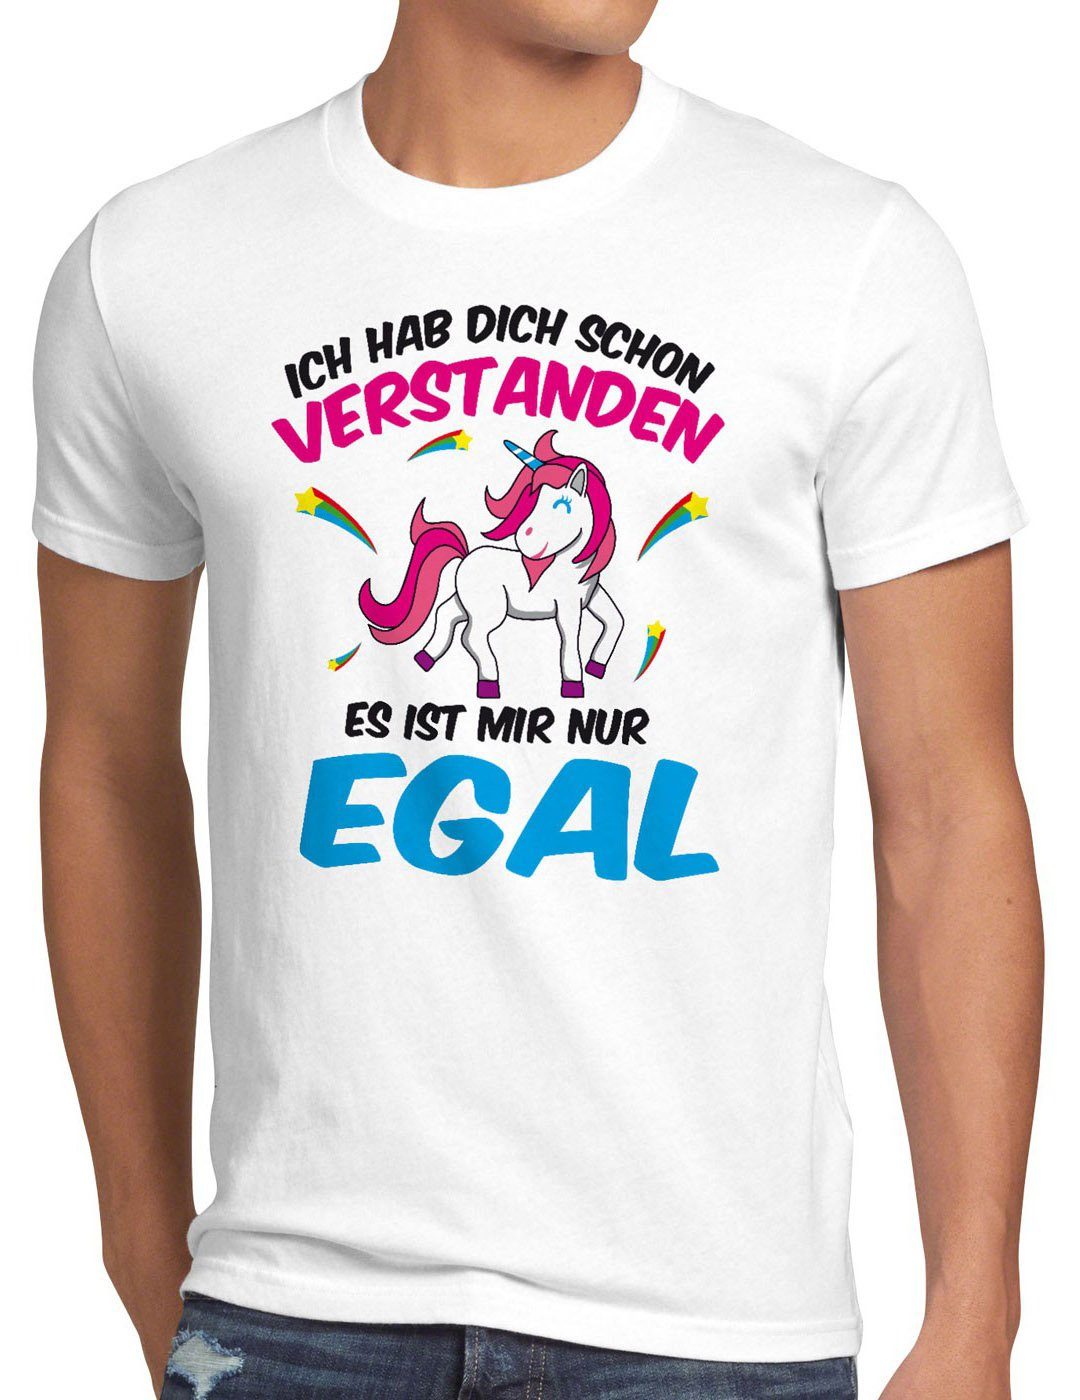 dich hab Print-Shirt Ich Spruch Fun Einhorn Herren style3 schon T-Shirt weiß Unicorn verstanden nur egal